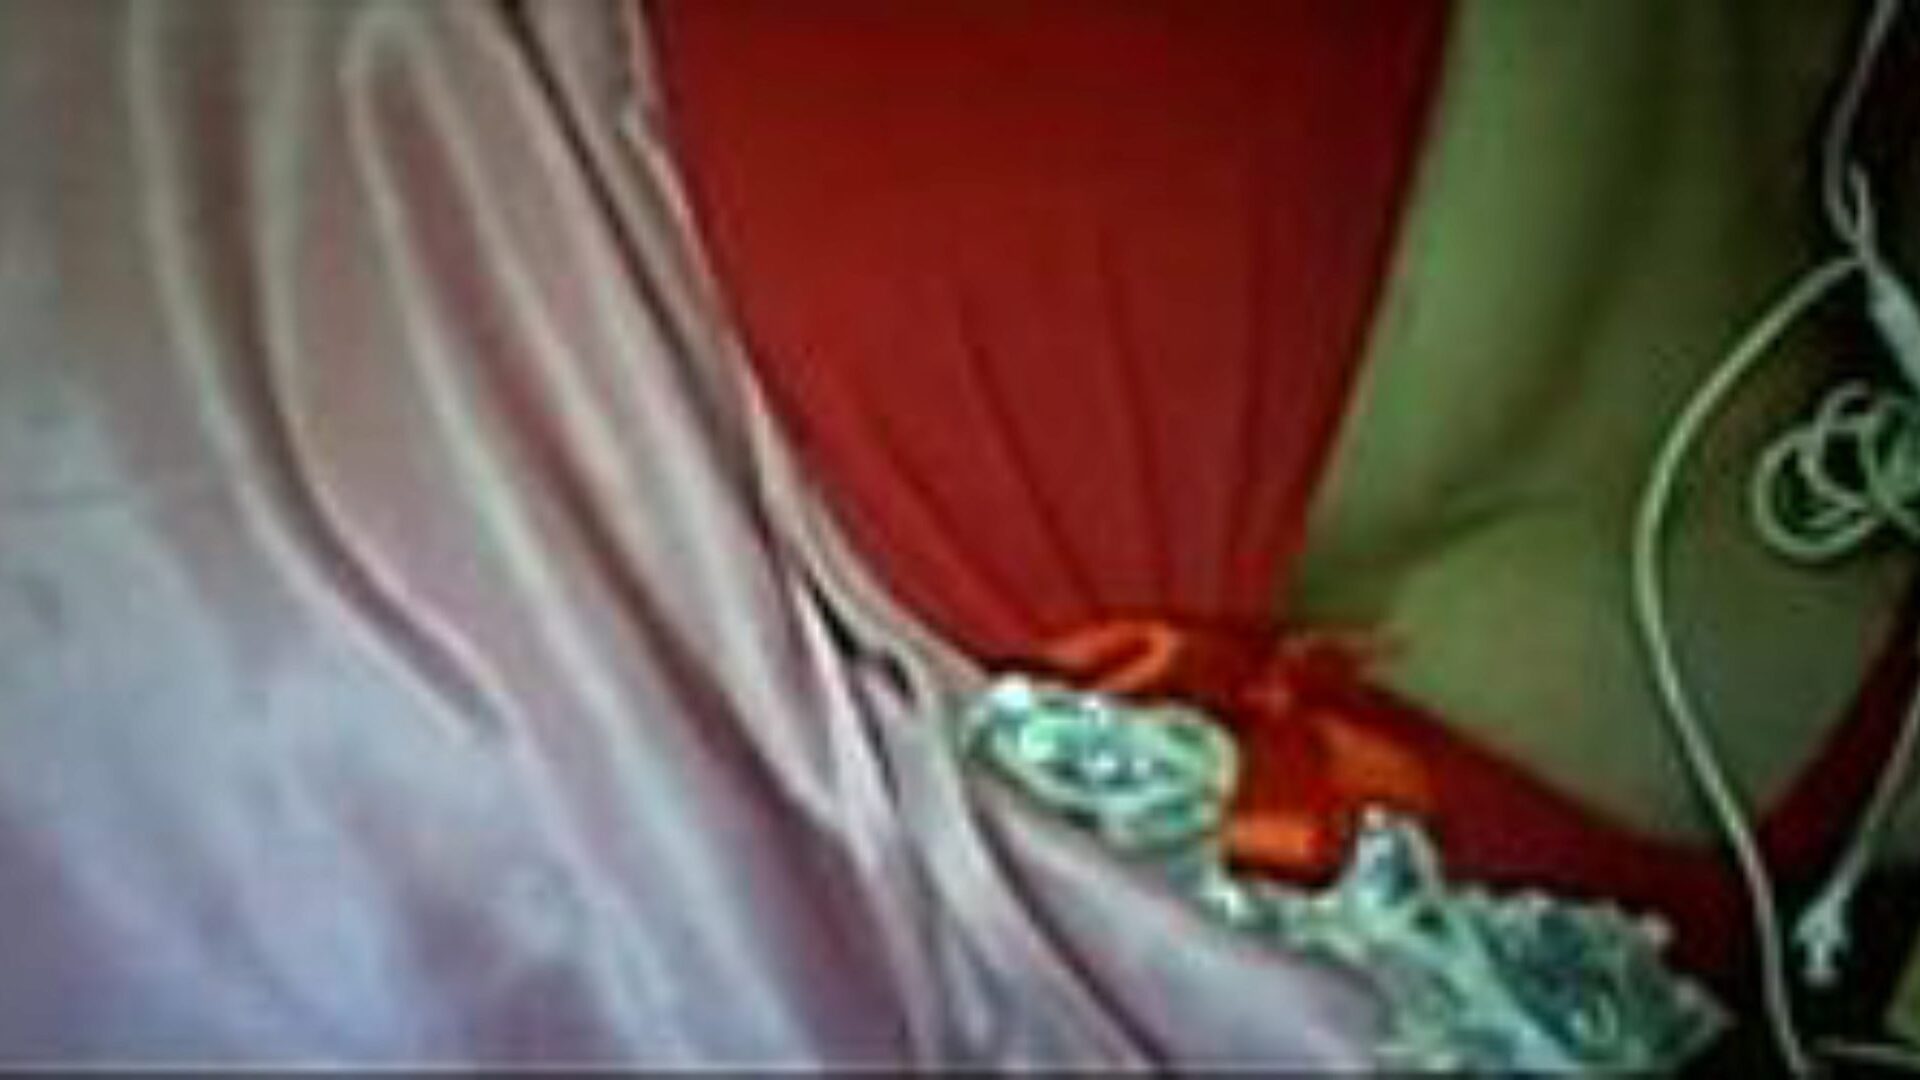 lbwa awi: free big tits & agent porn video a6 - xhamster mira el video de sexo lbwa awi tube gratis para todos en xhamster, con la colección más sexy de videos de clips porno árabes egipcios, big tits y agentes